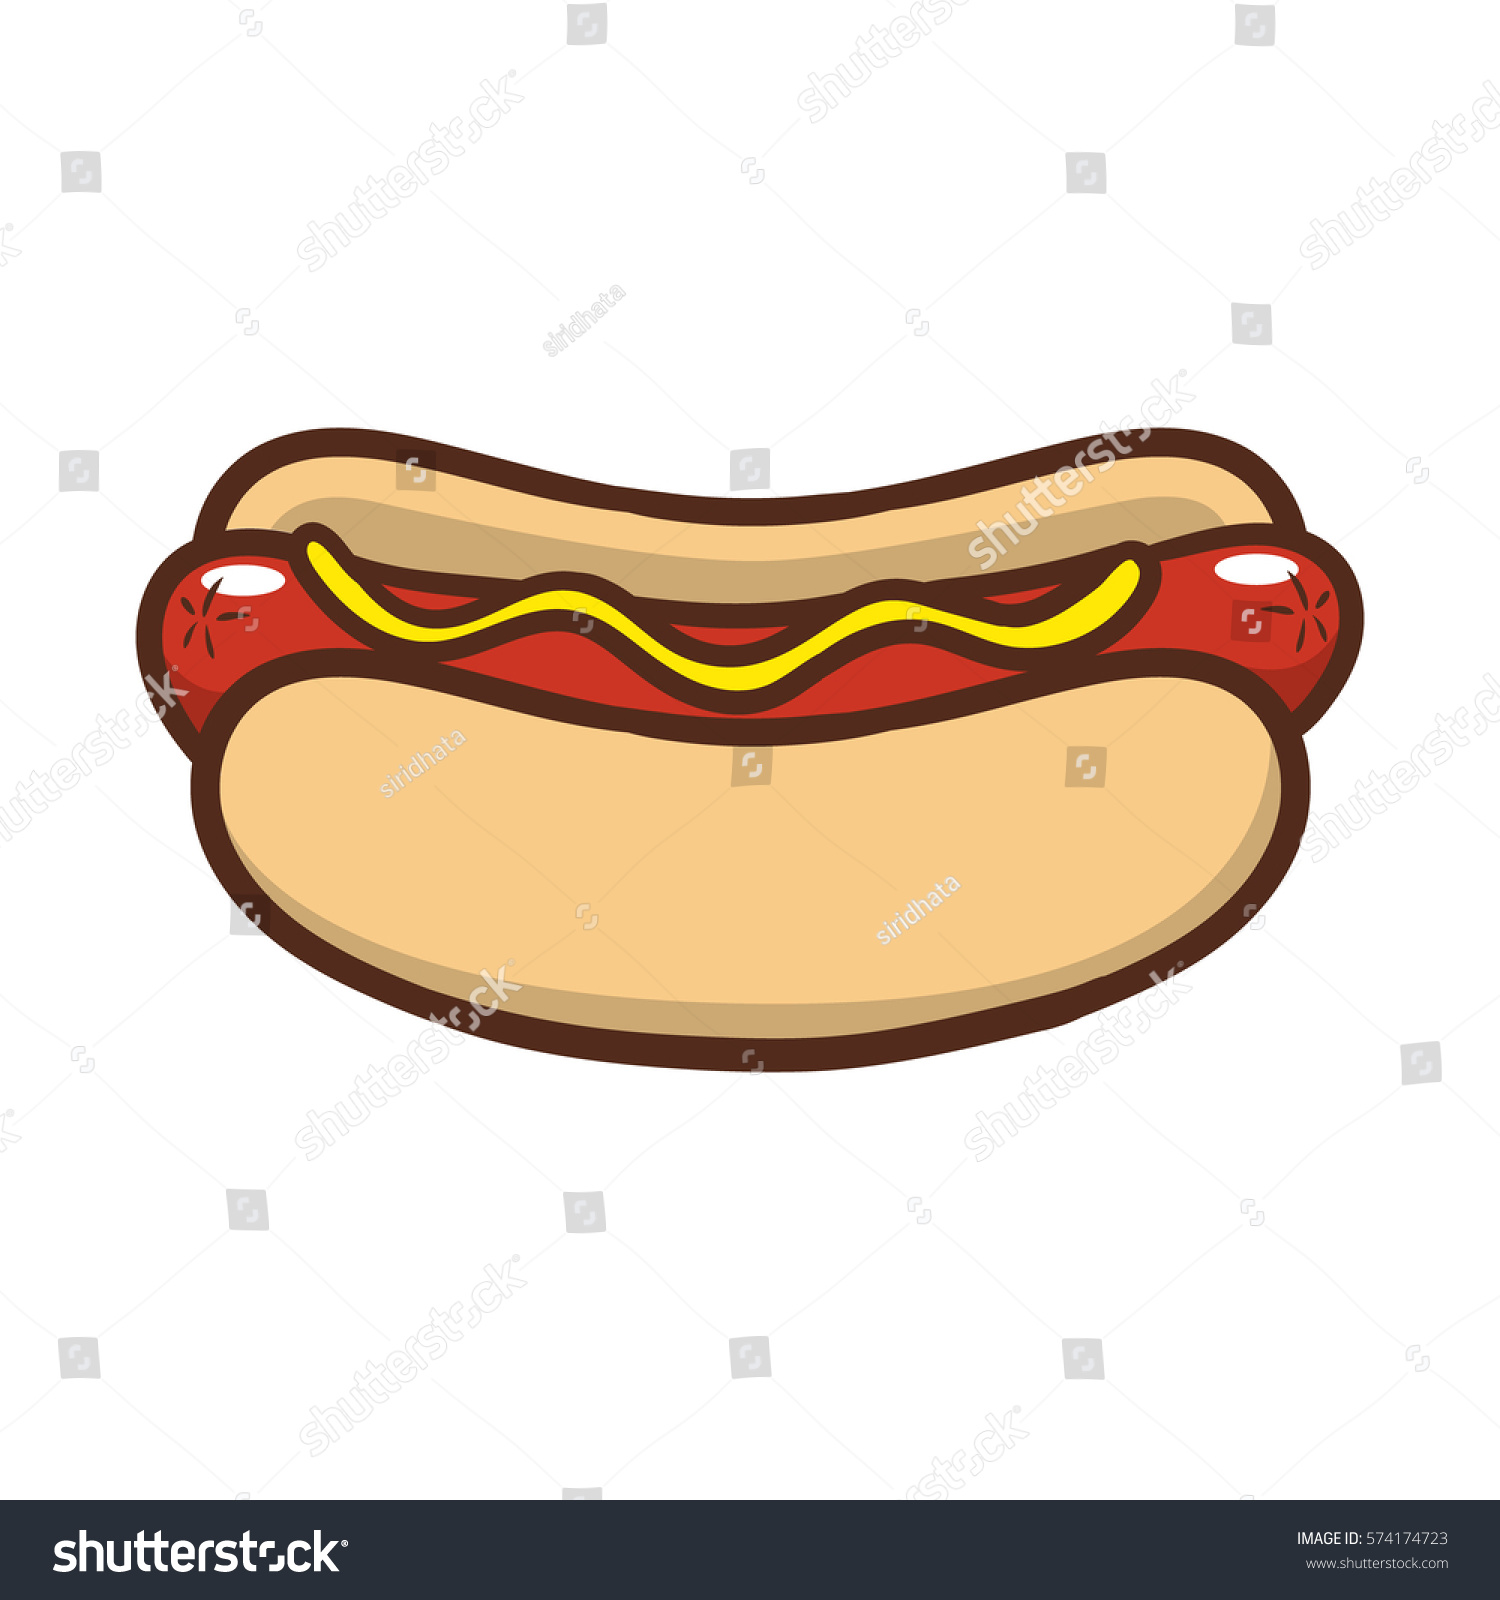 Cartoon Hotdog Vector Illustration Stock Vector 574174723 - Shutterstock